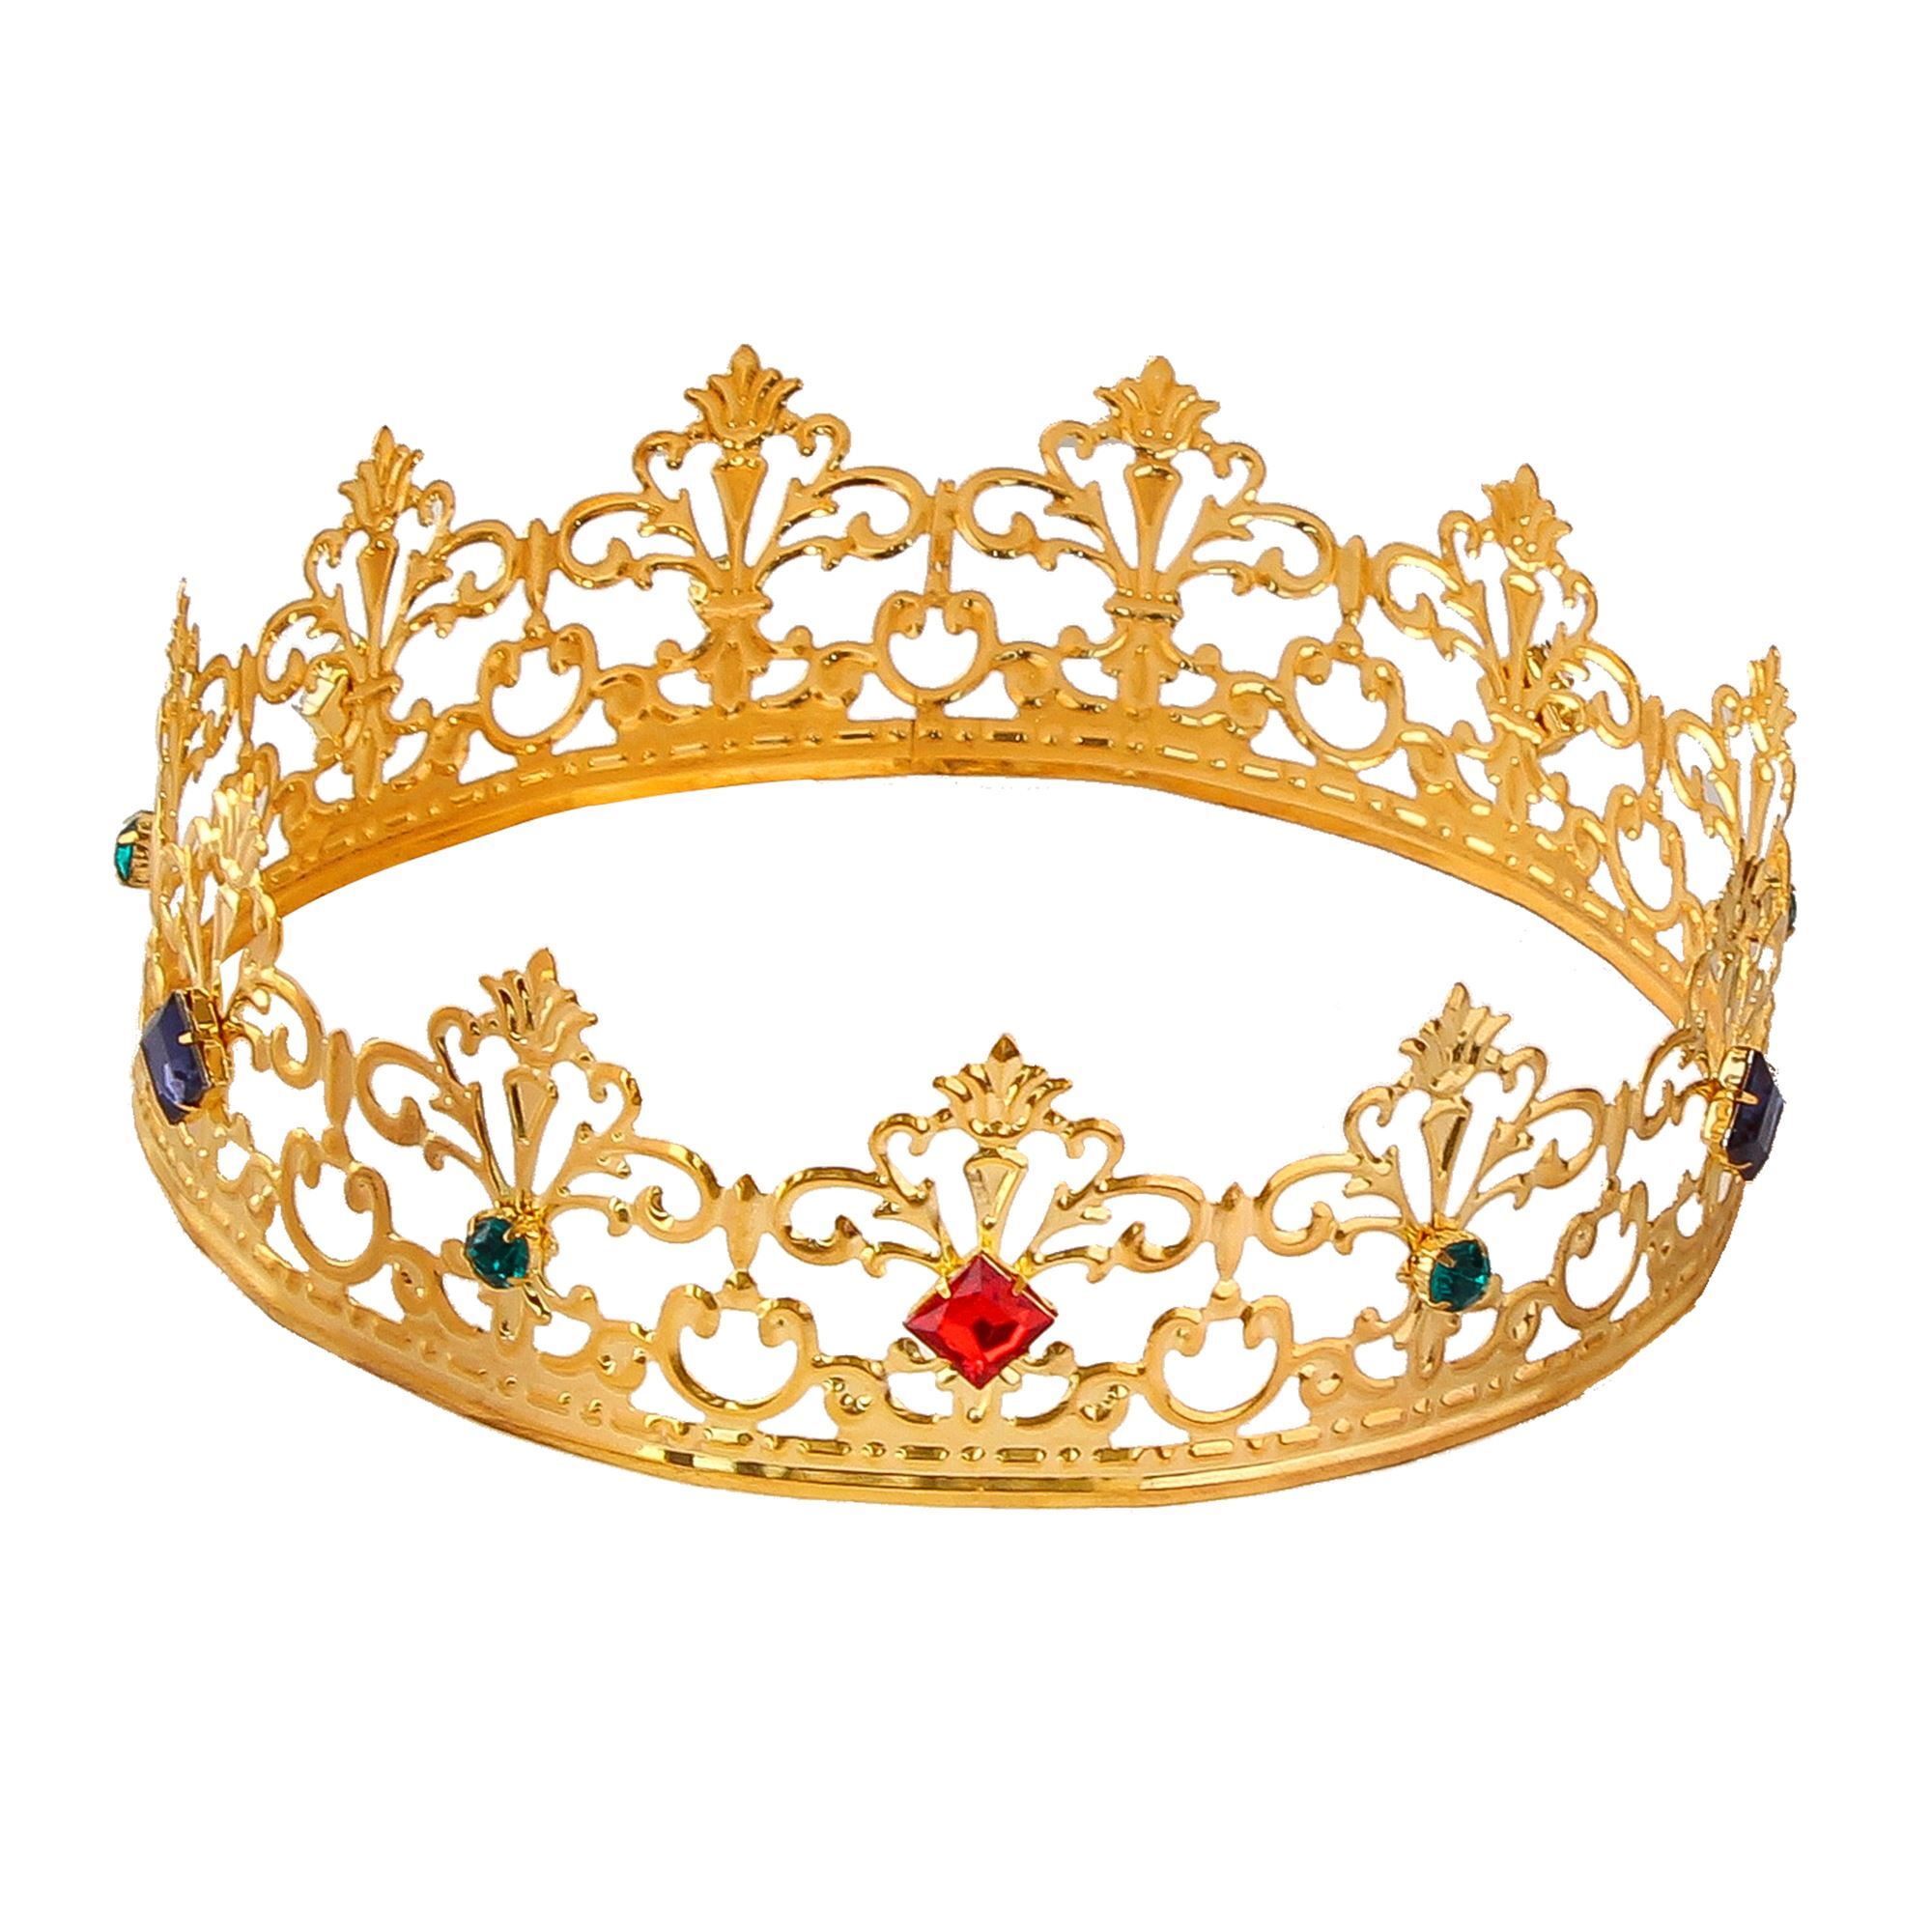 Kroon goud met stenen voor een echte prins of prinses van het bal